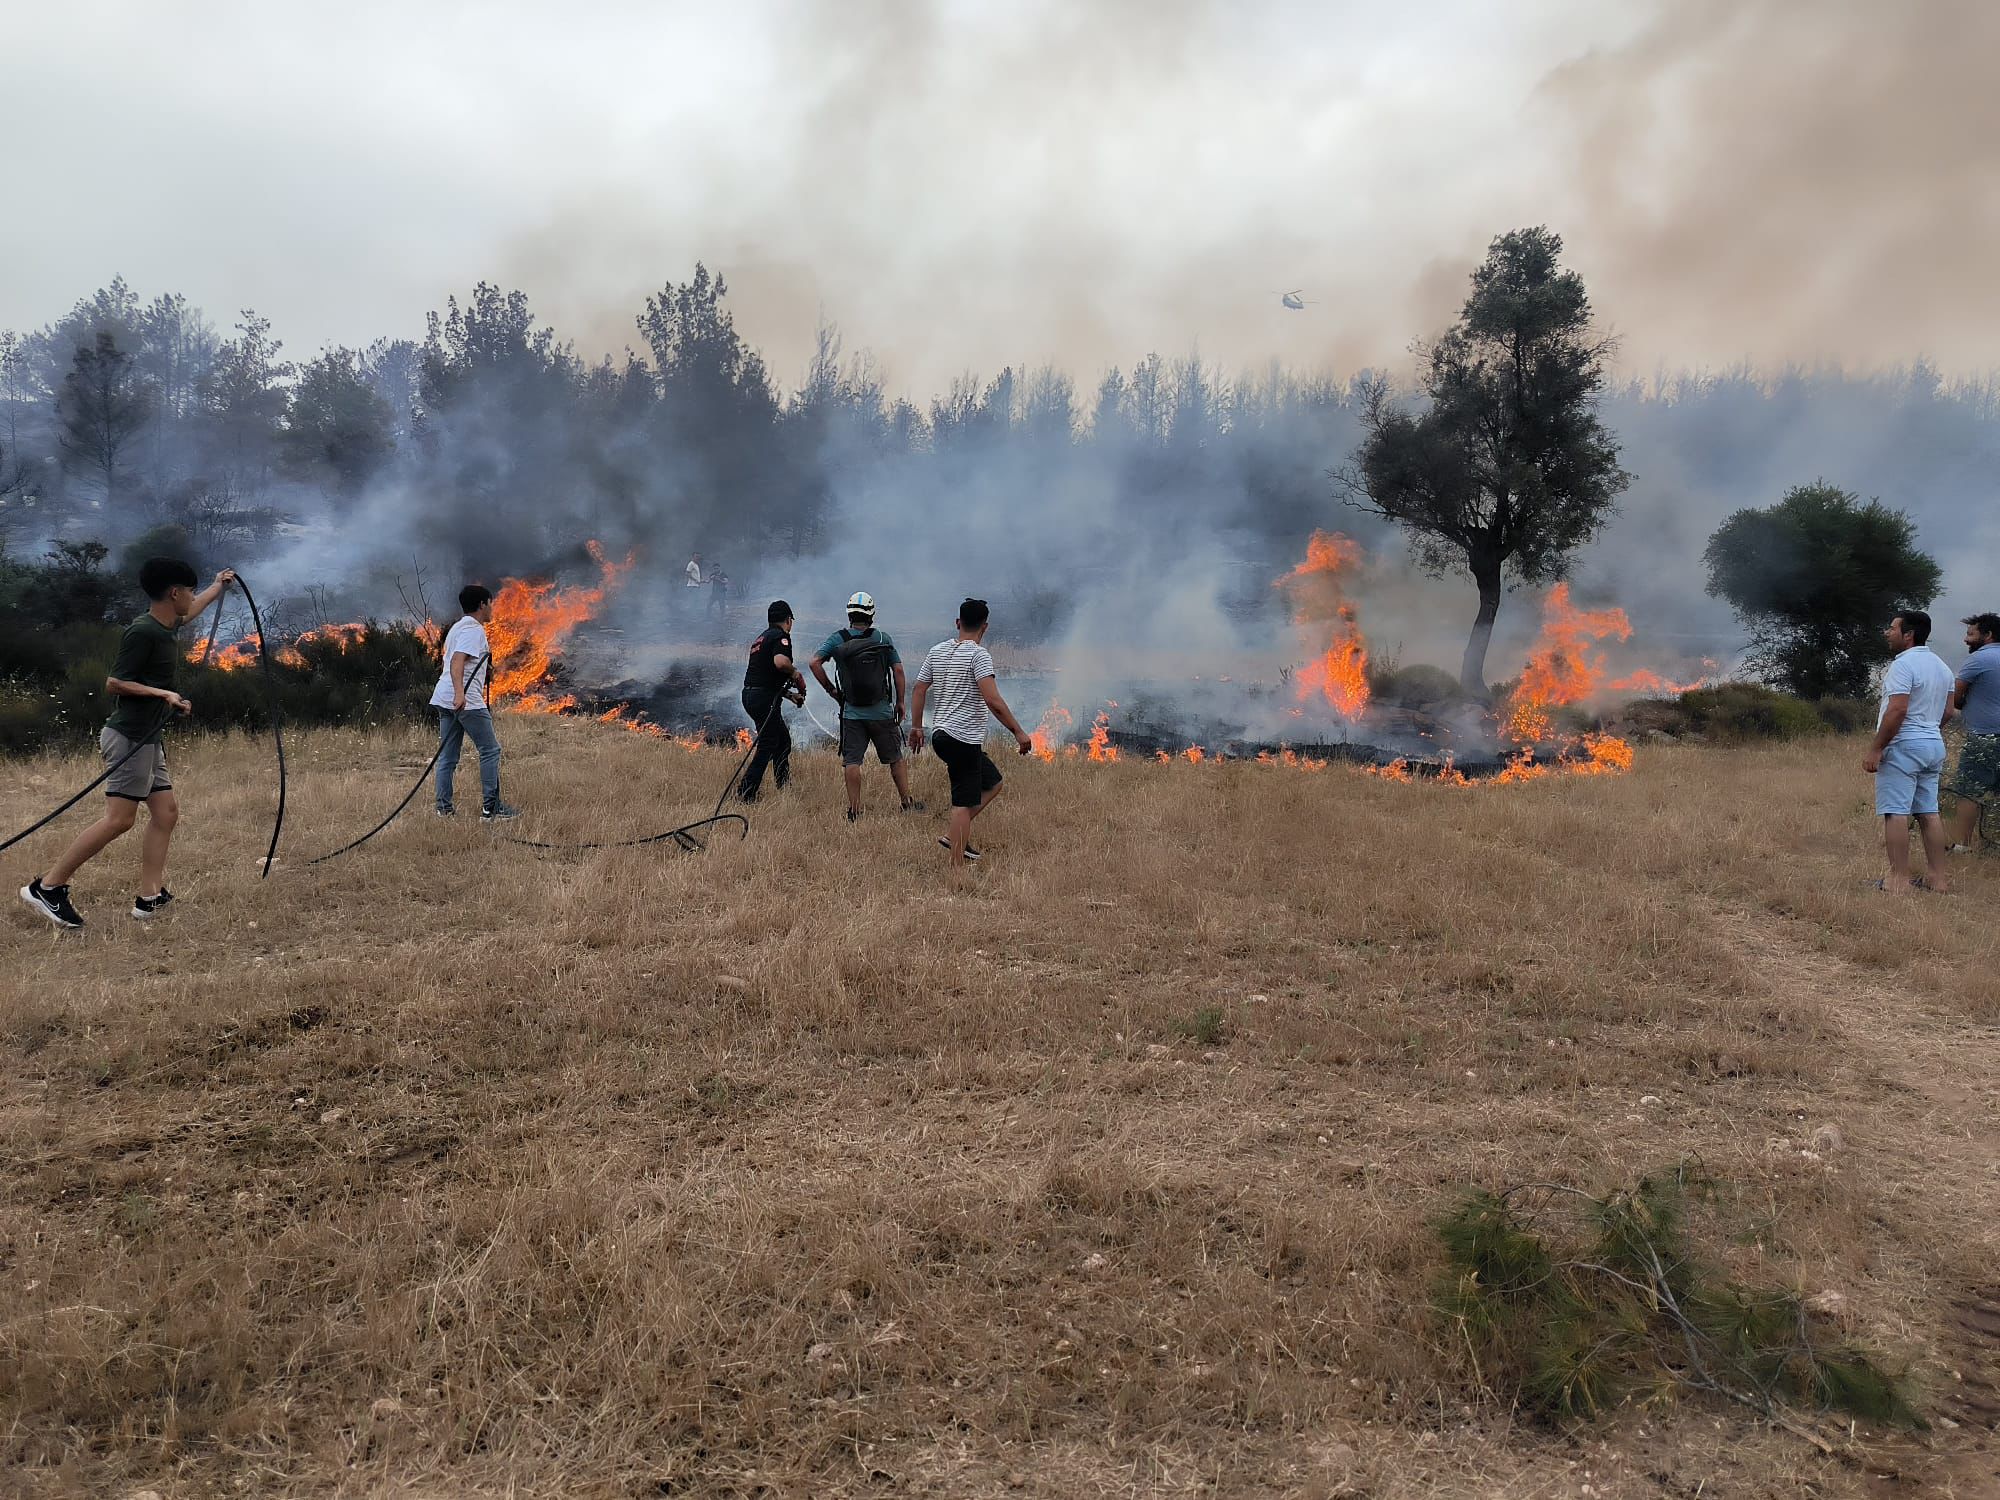 Muğla Büyükşehir Belediyesi’nden anız yangınlarına karşı uyarı